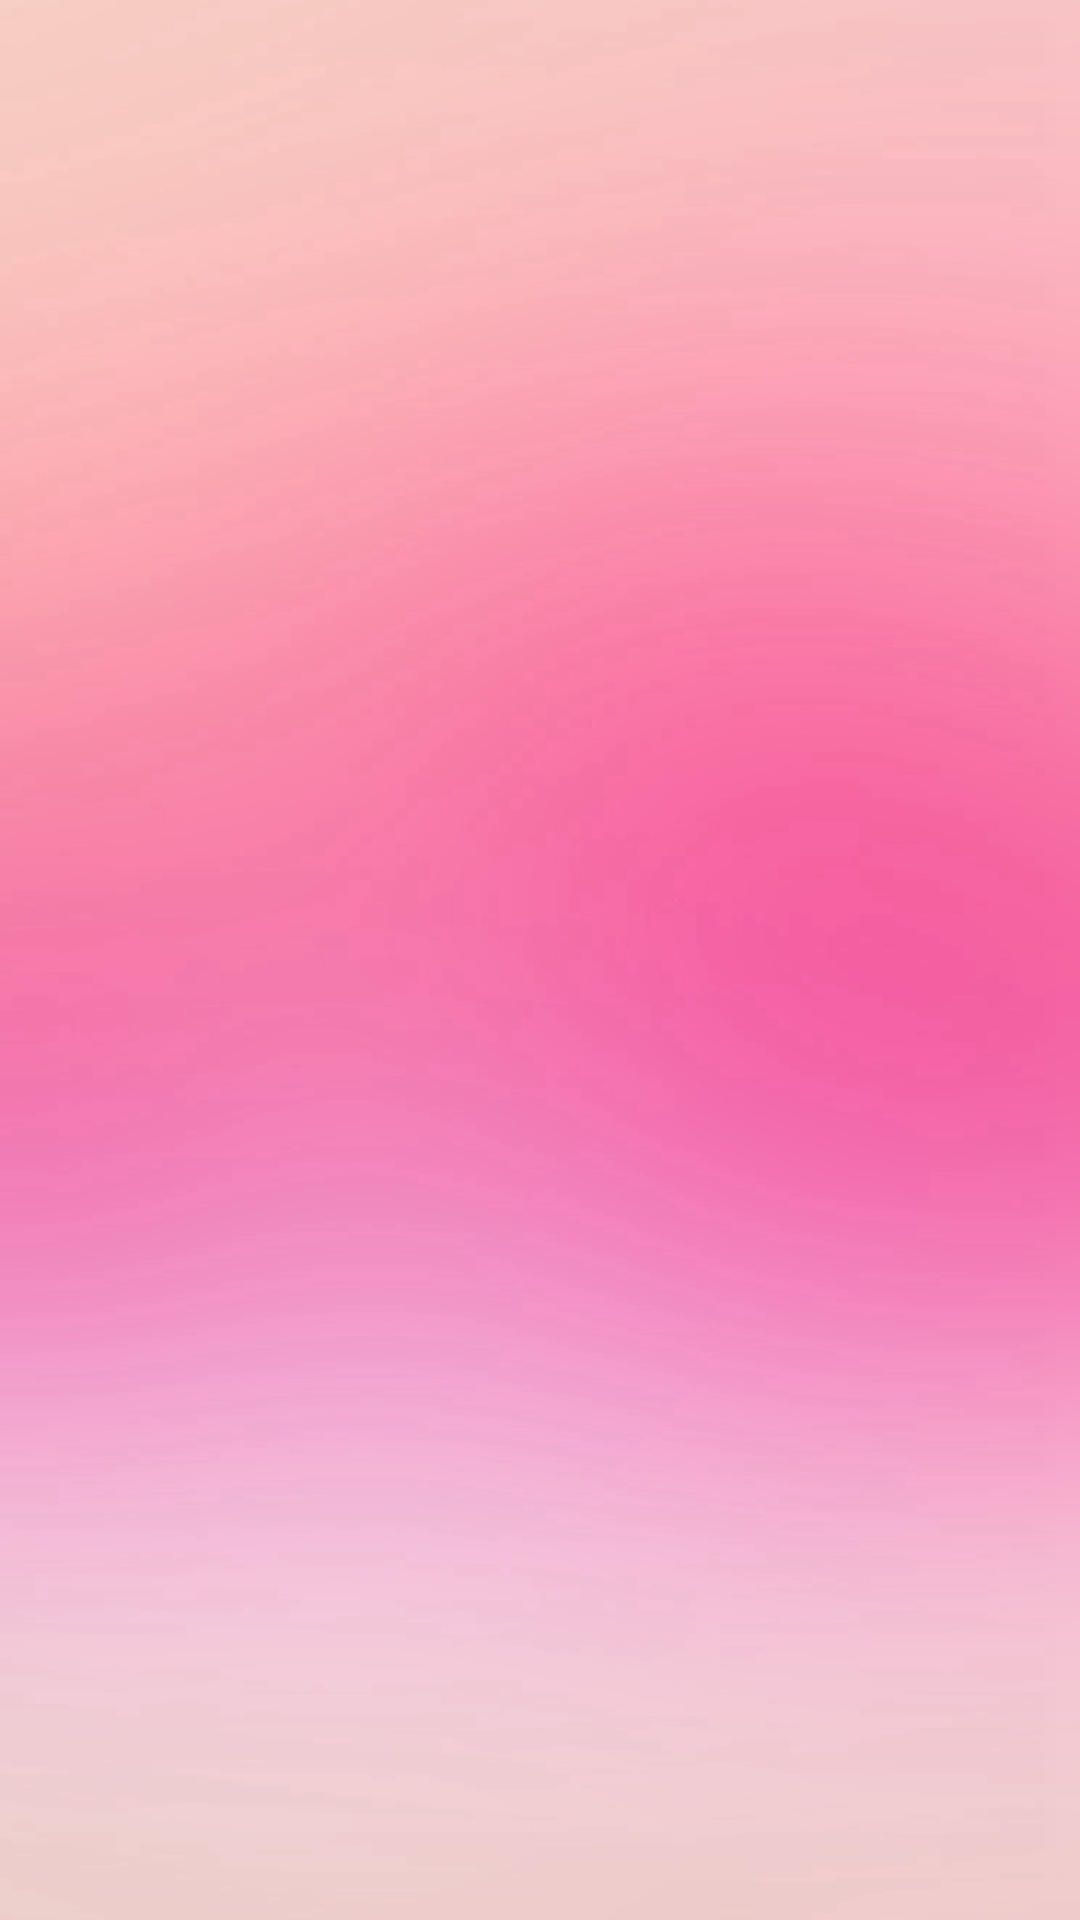 シンプルなピンクのスマホ壁紙 Iphone12 スマホ壁紙 待受画像ギャラリー